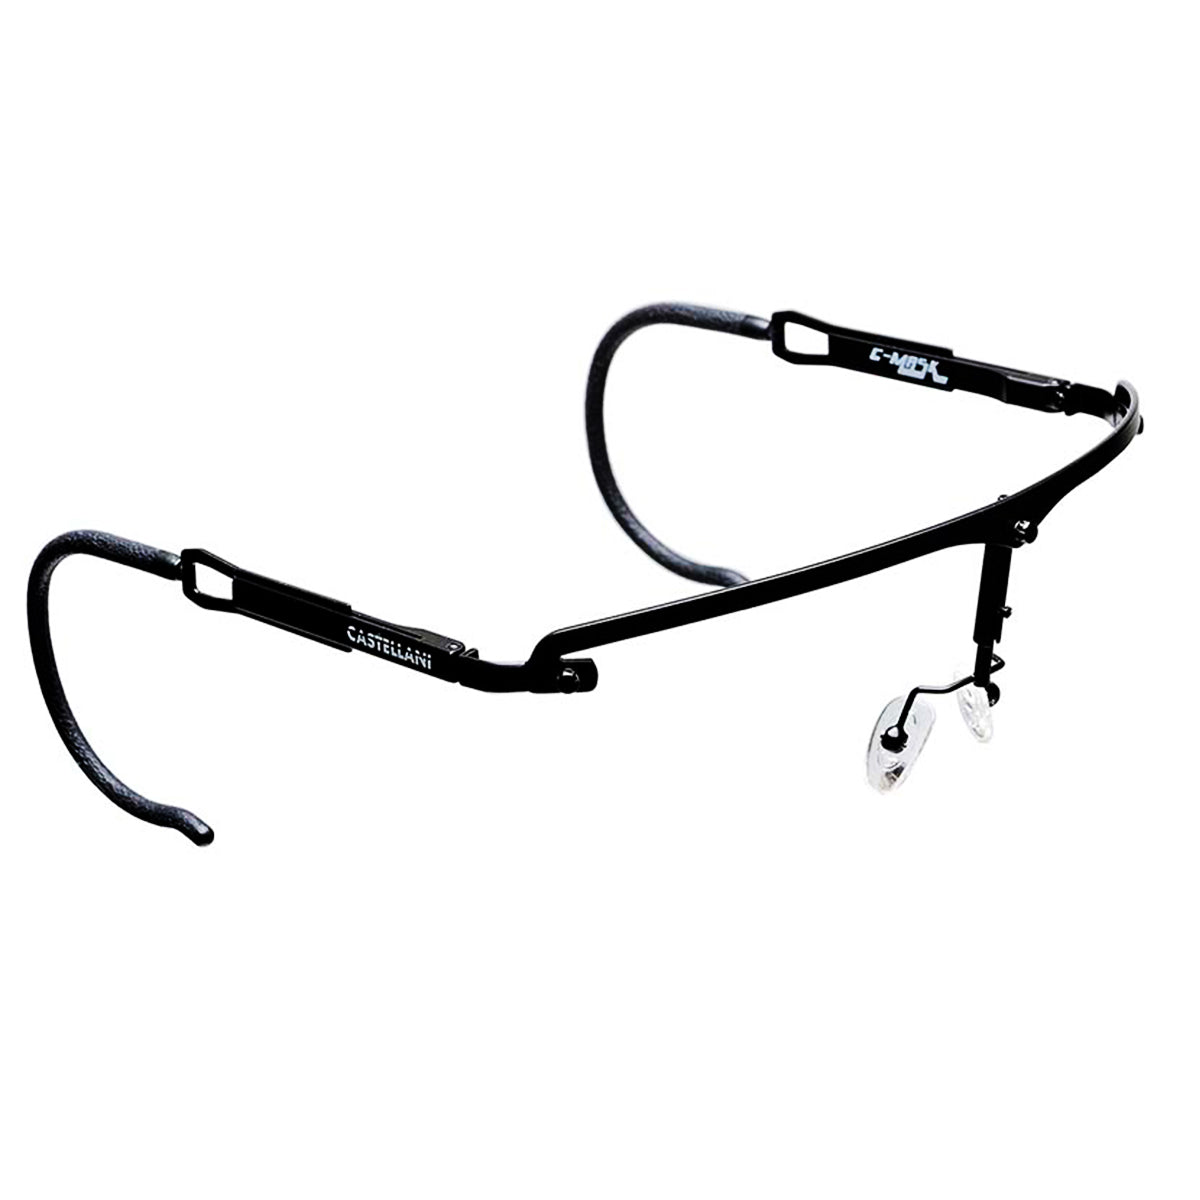 ⭐ Comprar gafas de tiro castellani c-mask 2 de alta calidad